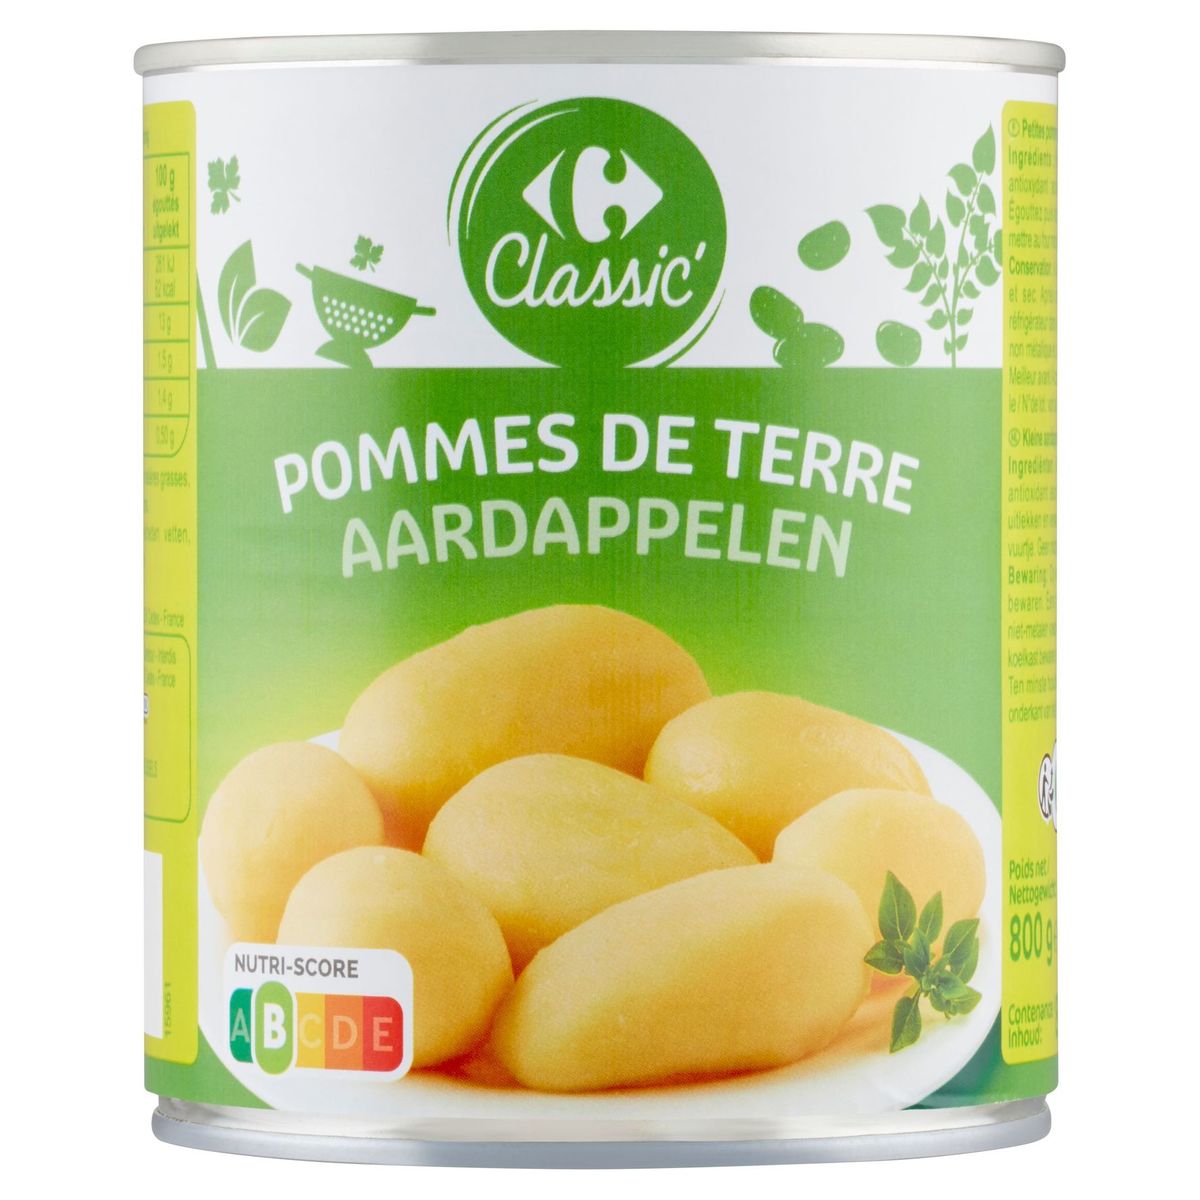 Carrefour Classic' Pommes de Terre 800 g